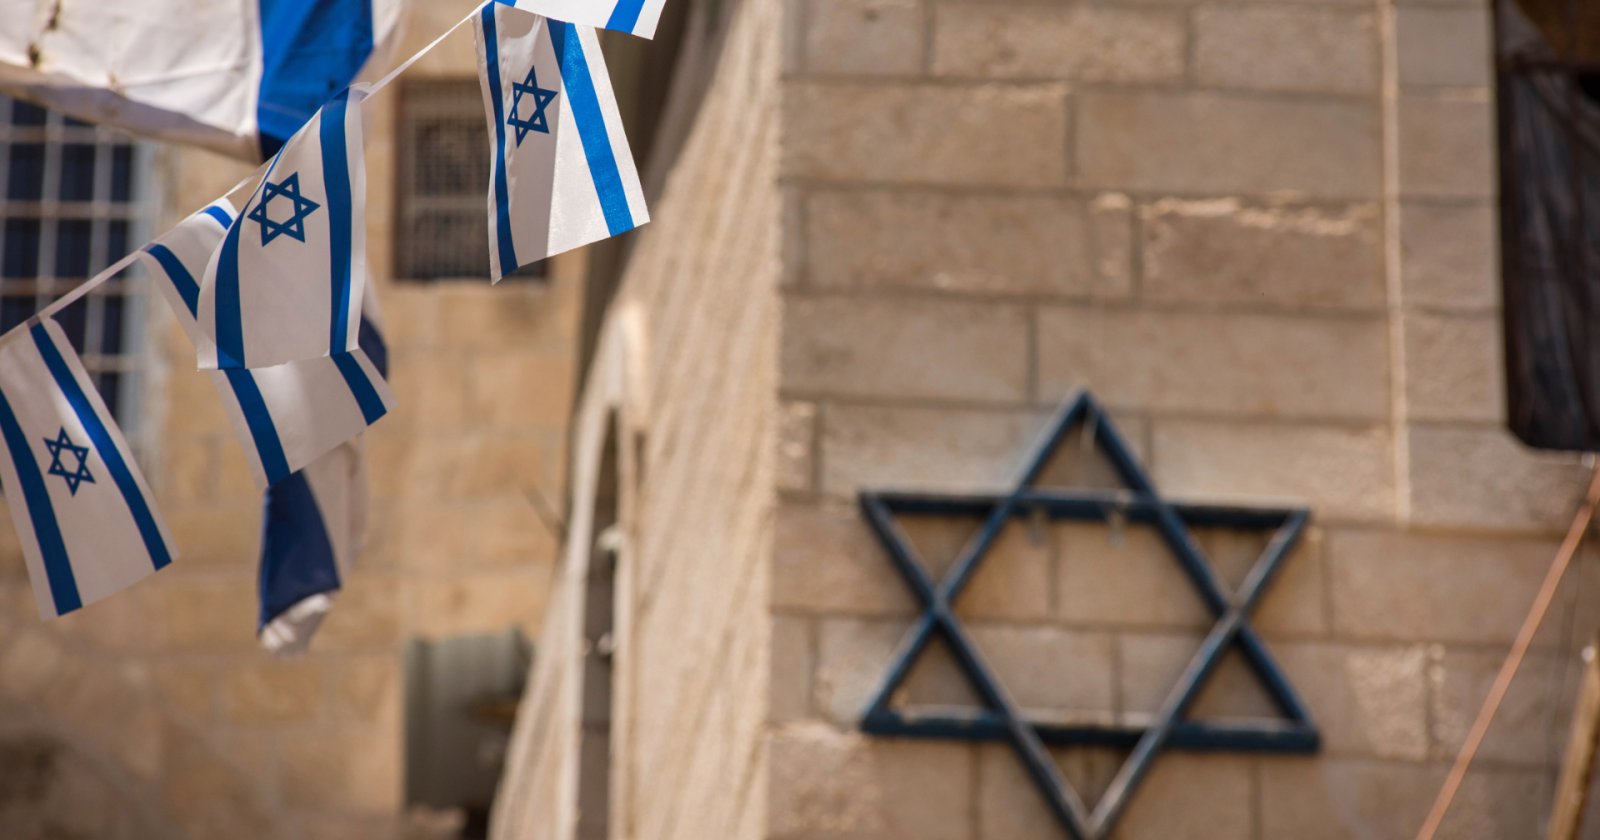 กระเเสเกลียดชังชาวยิวเพิ่มขึ้น 488% เหตุความขัดแย้งอิสราเอล – ฮามาส